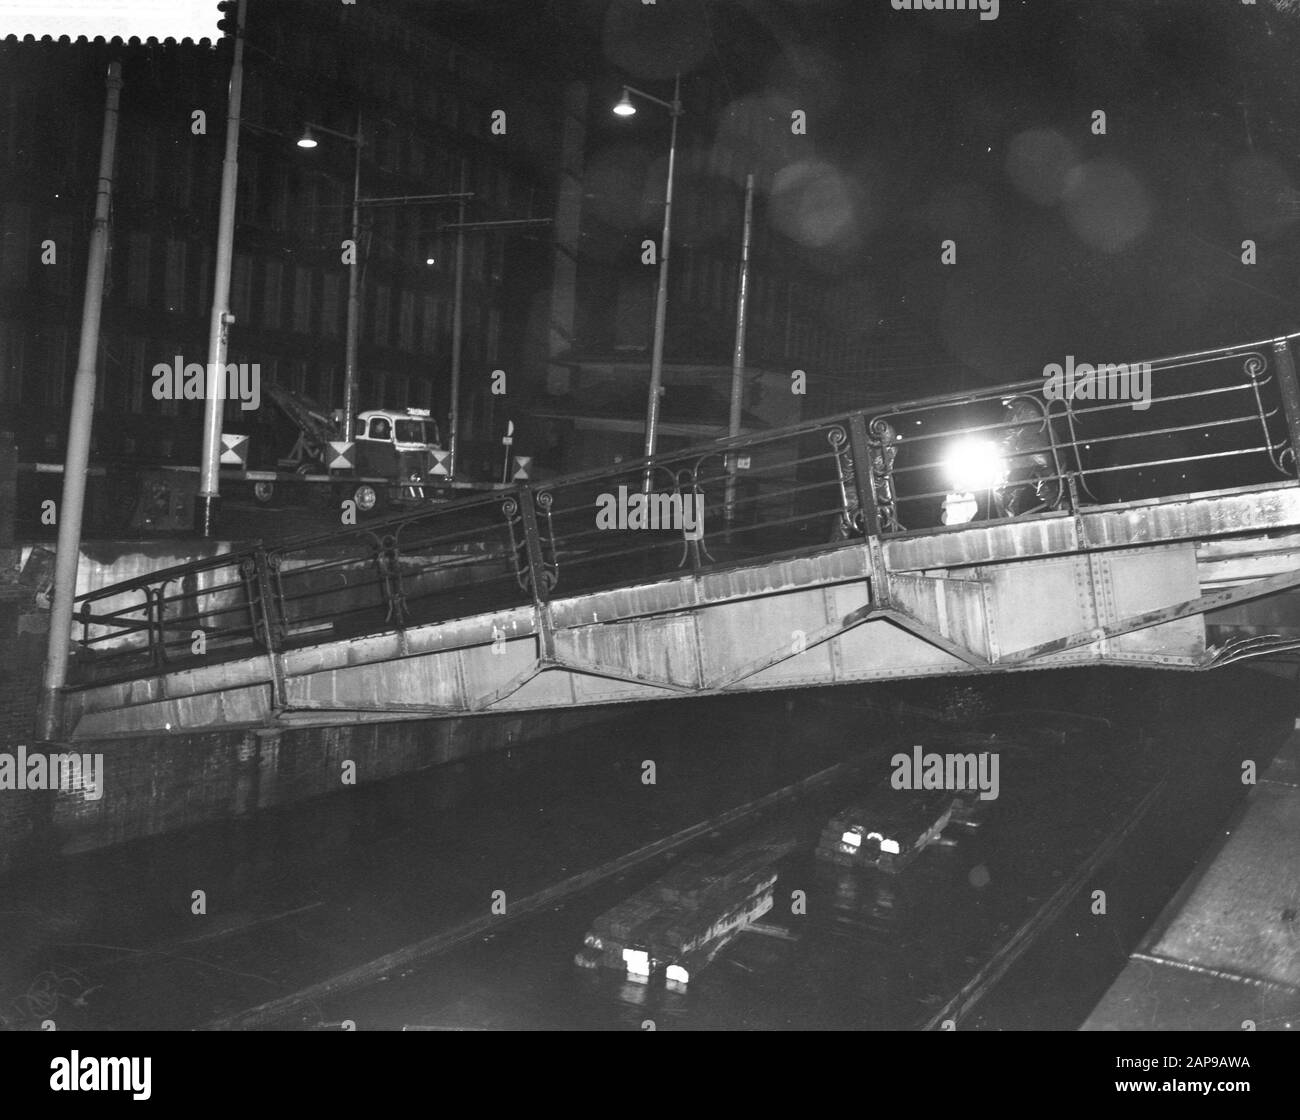 Brücke der Parkschleusen in Rotterdam brach durch Abbruch eines Gegengewichts zusammen Datum: 23. Dezember 1959 Standort: Rotterdam, Zuid-Holland Schlüsselwörter: Brücke, Abbau, Gegengewichte Stockfoto